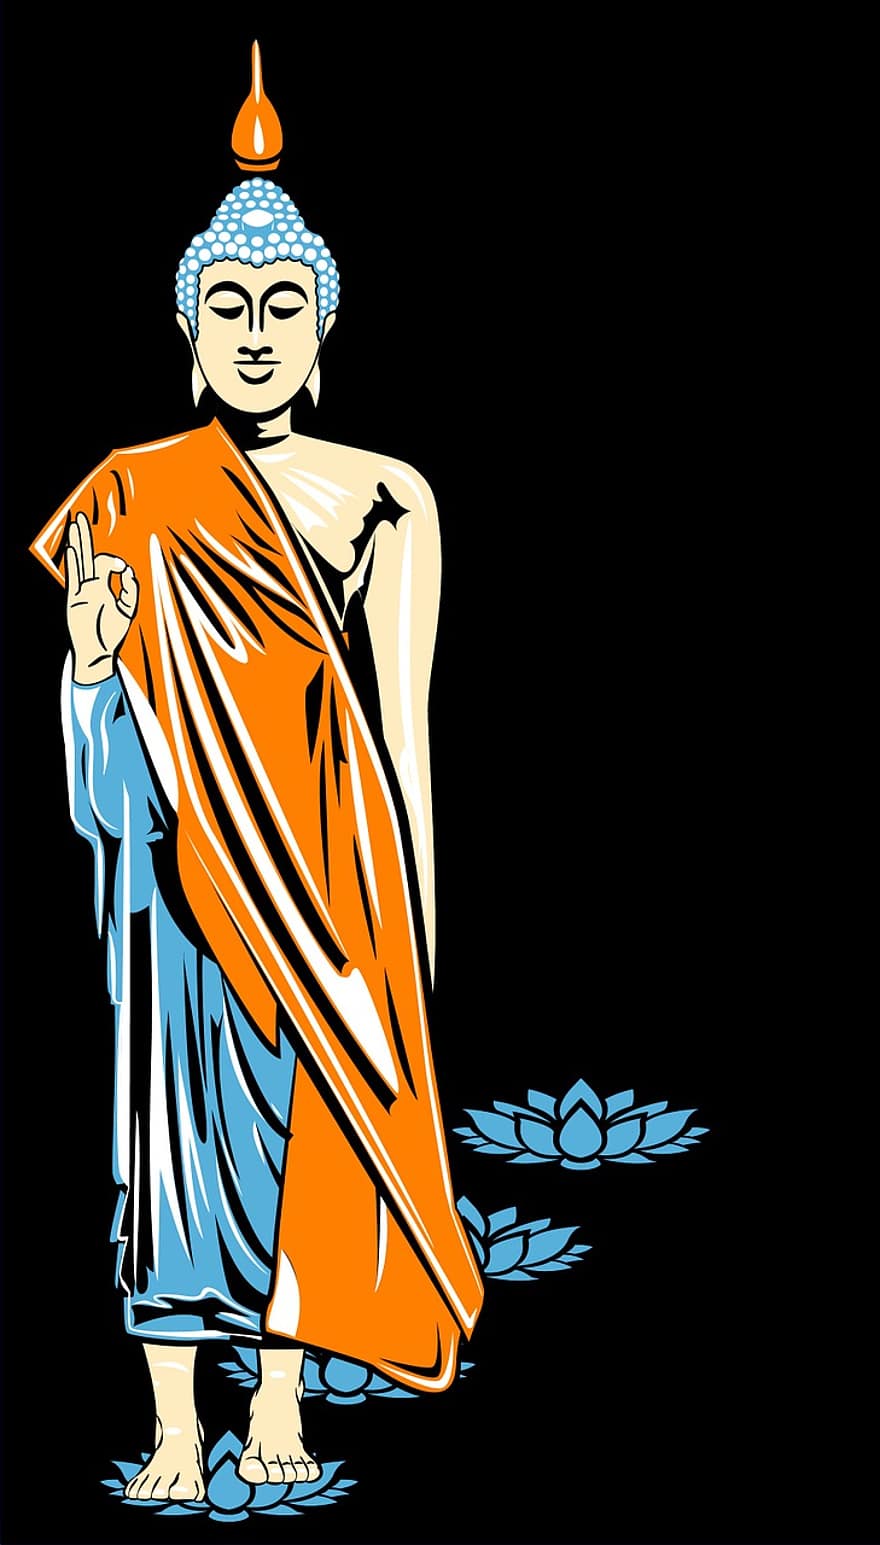 Budda, Immagine, serigrafia, buddismo, ammide, loto, fiore di loto, est, zen, meditazione, yoga